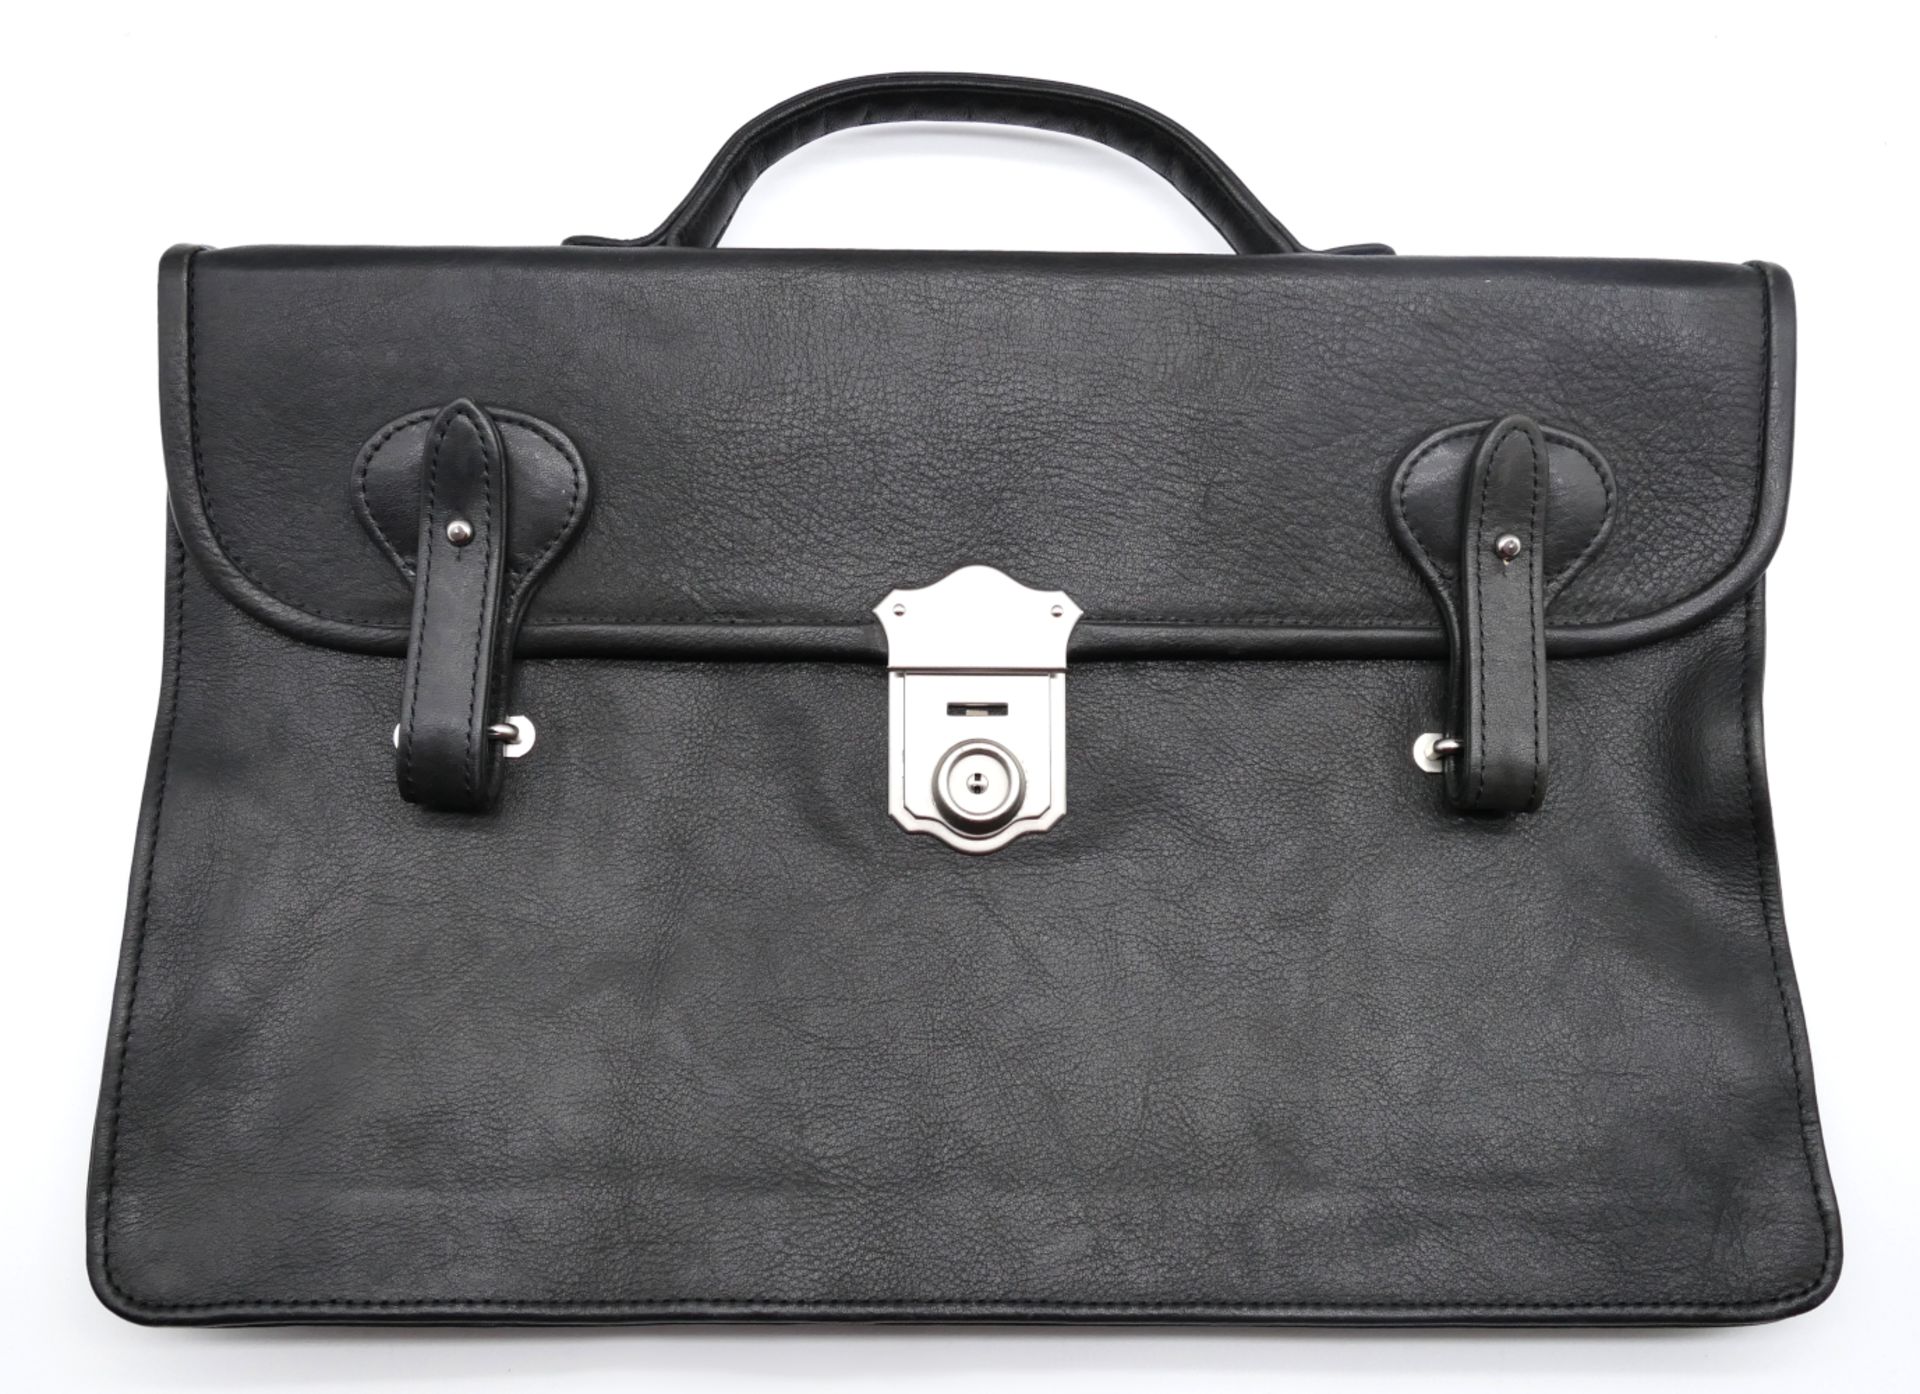 1 Laptoptasche, Textil schwarz, PORSCHE-Design, Maße ca. 25,5x35cm sowie 1 dünne Aktentasche, schwar